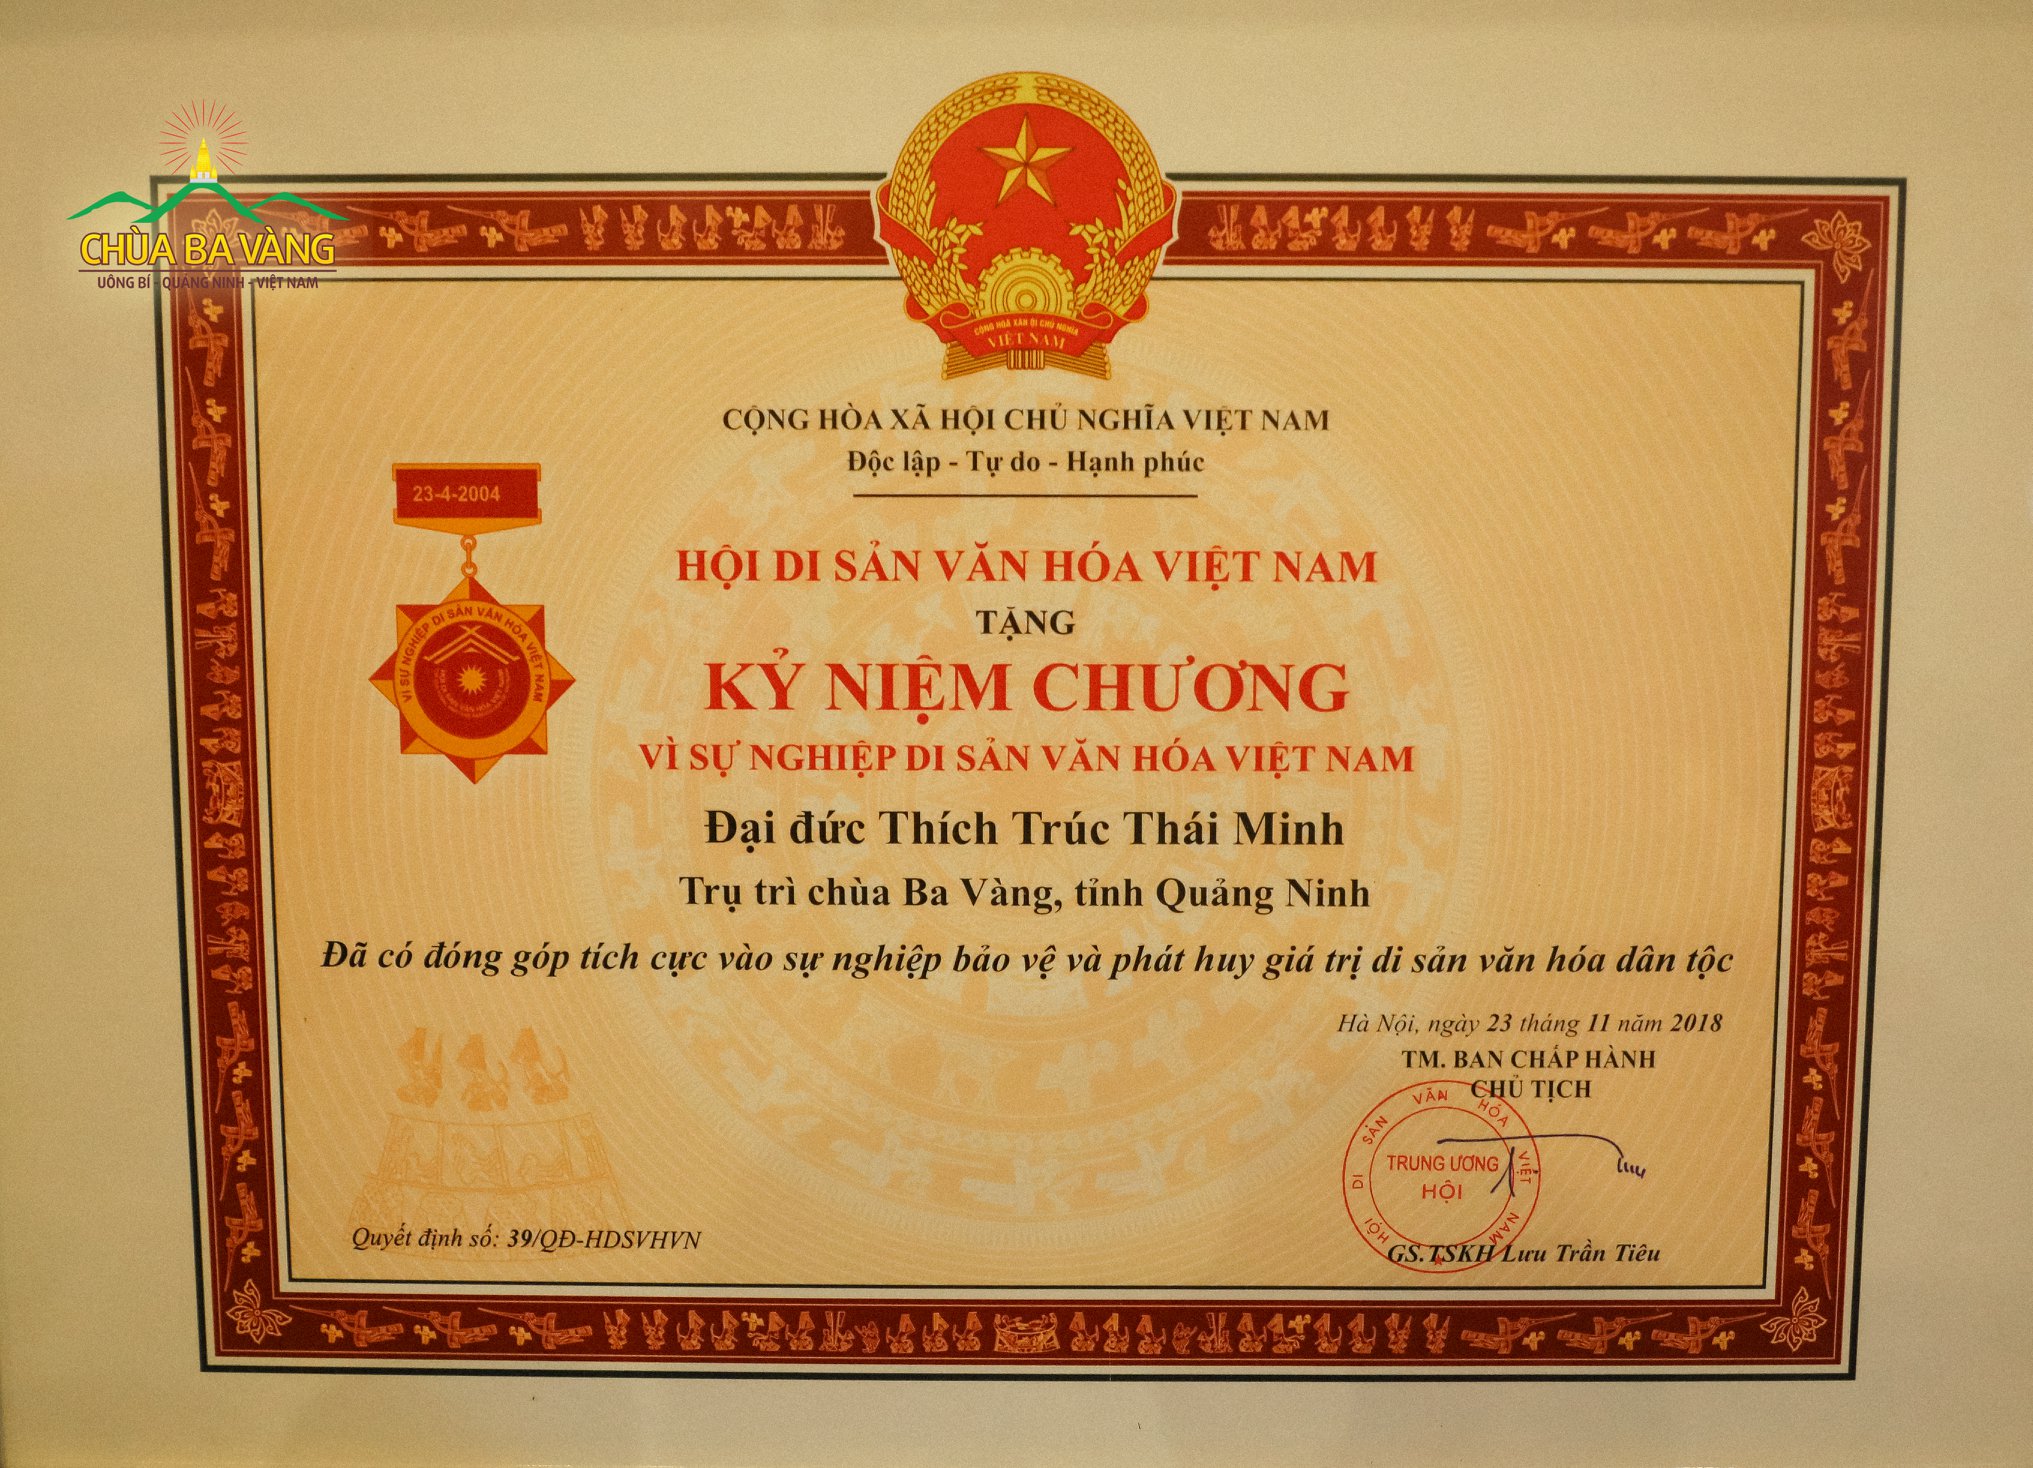 Bằng khen của Hội Di sản Văn hóa Việt Nam trao tặng cho Thầy Thích Trúc Thái Minh - Người có đóng góp tích cực vào sự nghiệp bảo vệ và phát huy giá trị di sản văn hóa dân tộc.